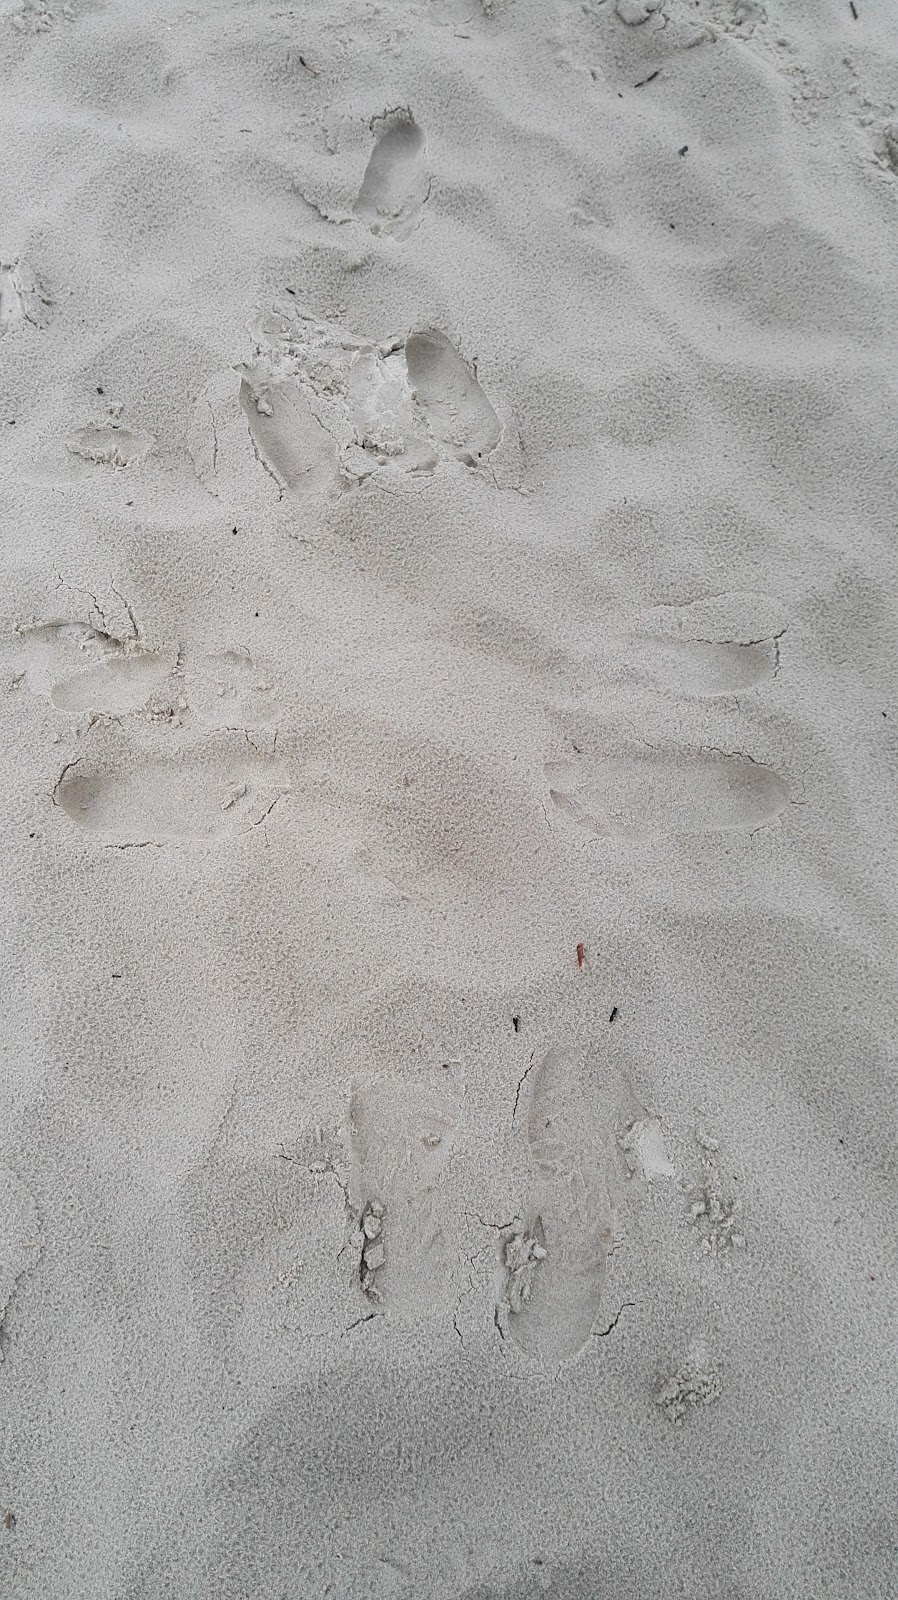 Jak stopy na piasku.jpg